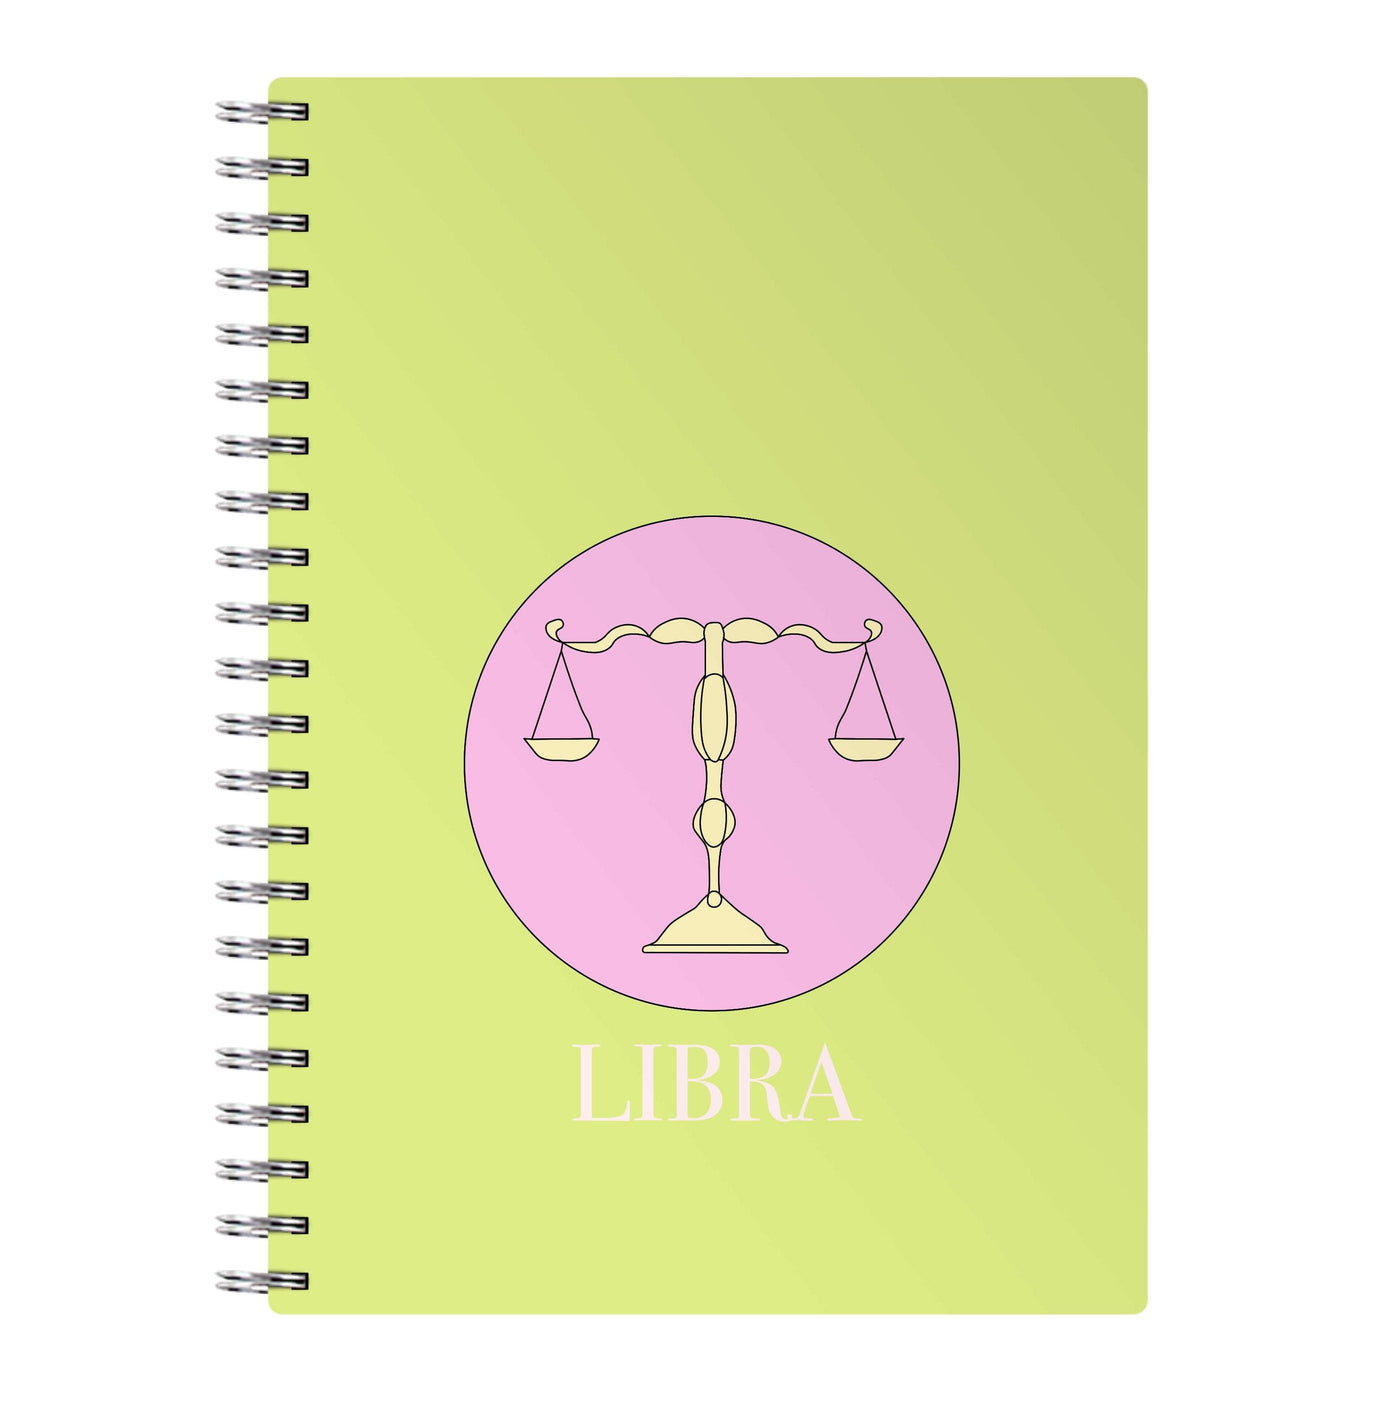 Libra - Tarot Cards Notebook